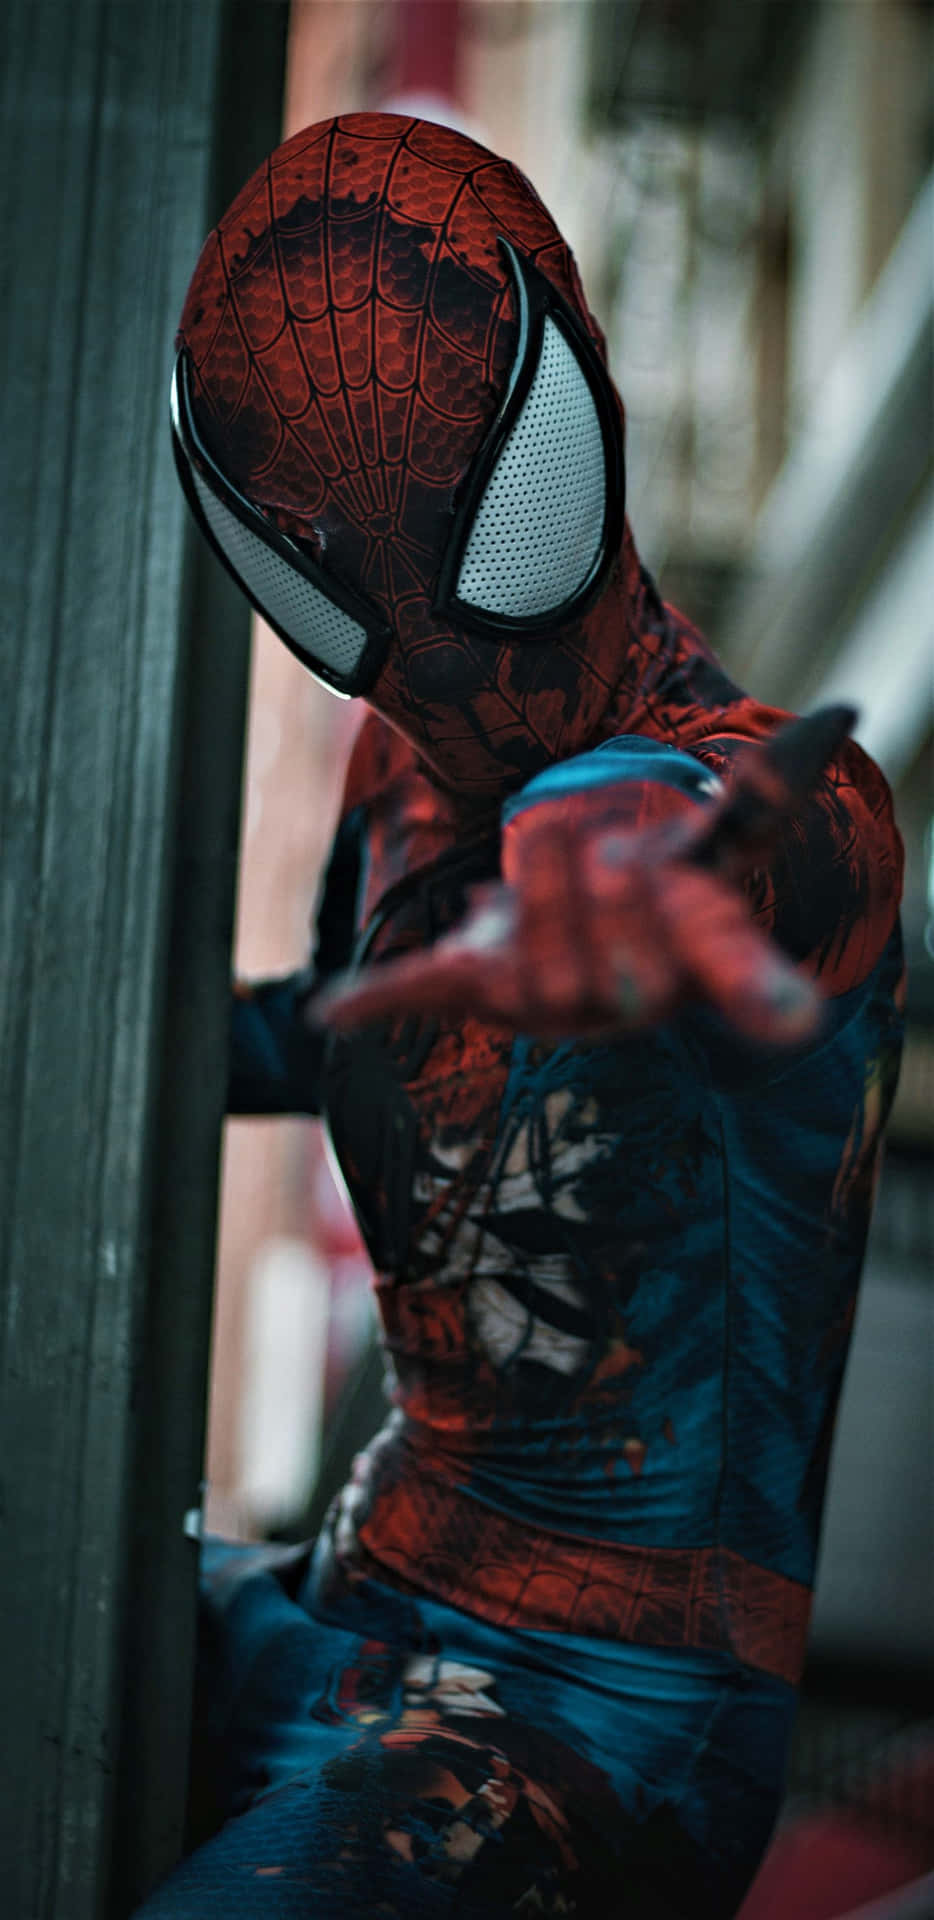 Pixel3xl Marvel Hintergrund Spiderman Cosplayer